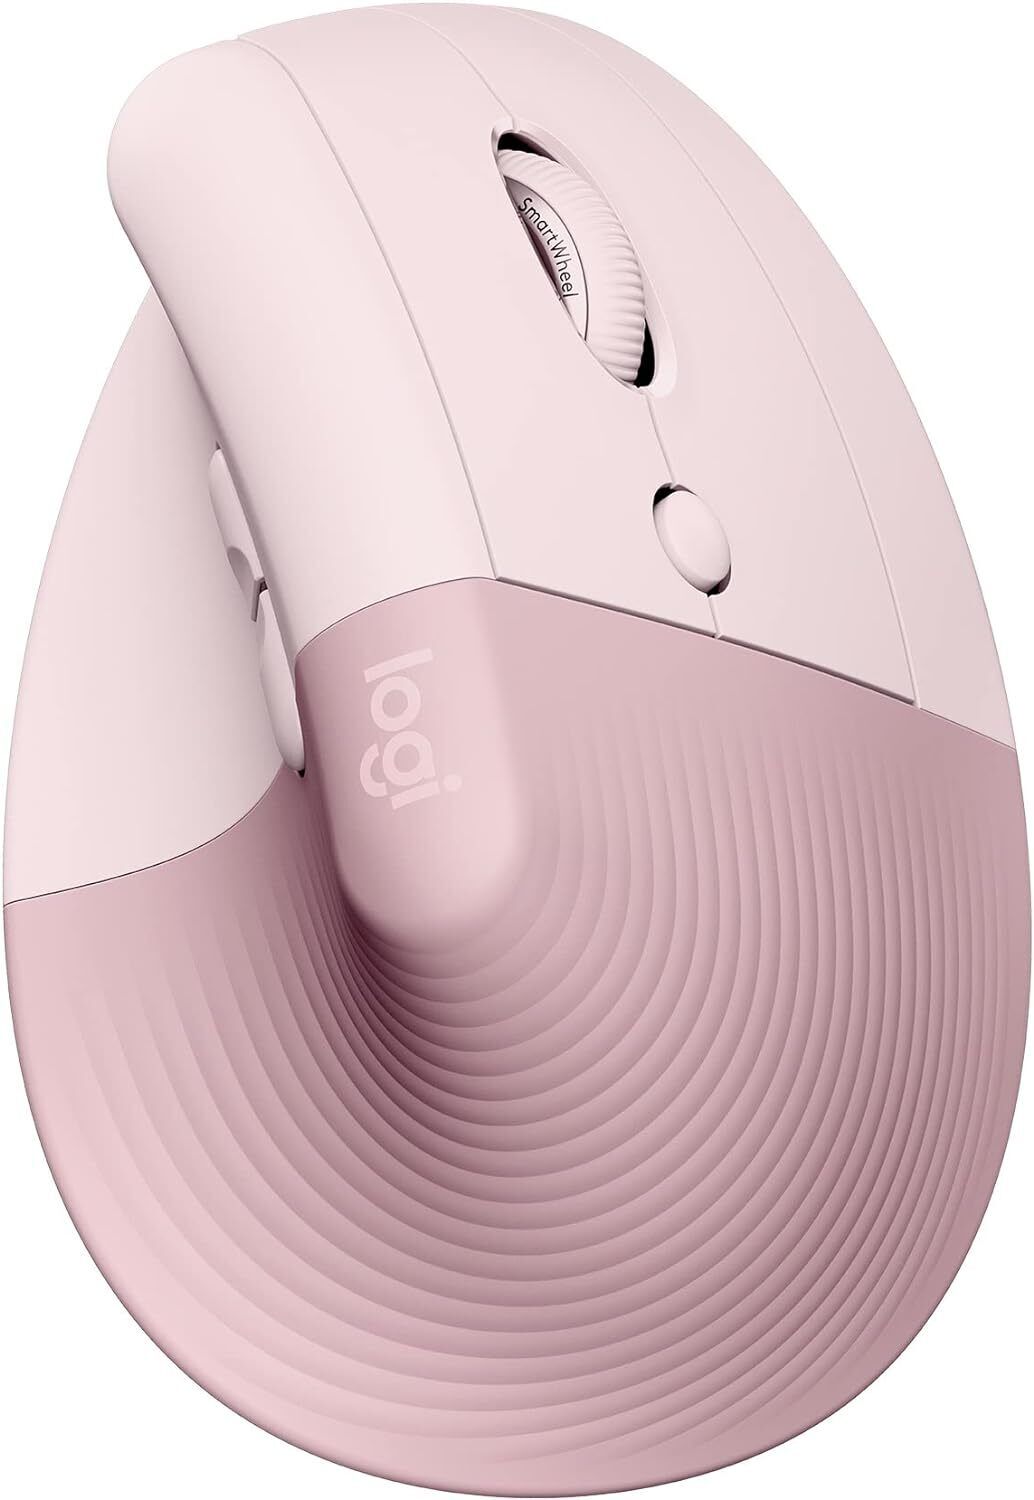 Logitech Lift Vertical Ergonomic Mouse, Bluetooth / Logi Bolt USB Receiver, Pink